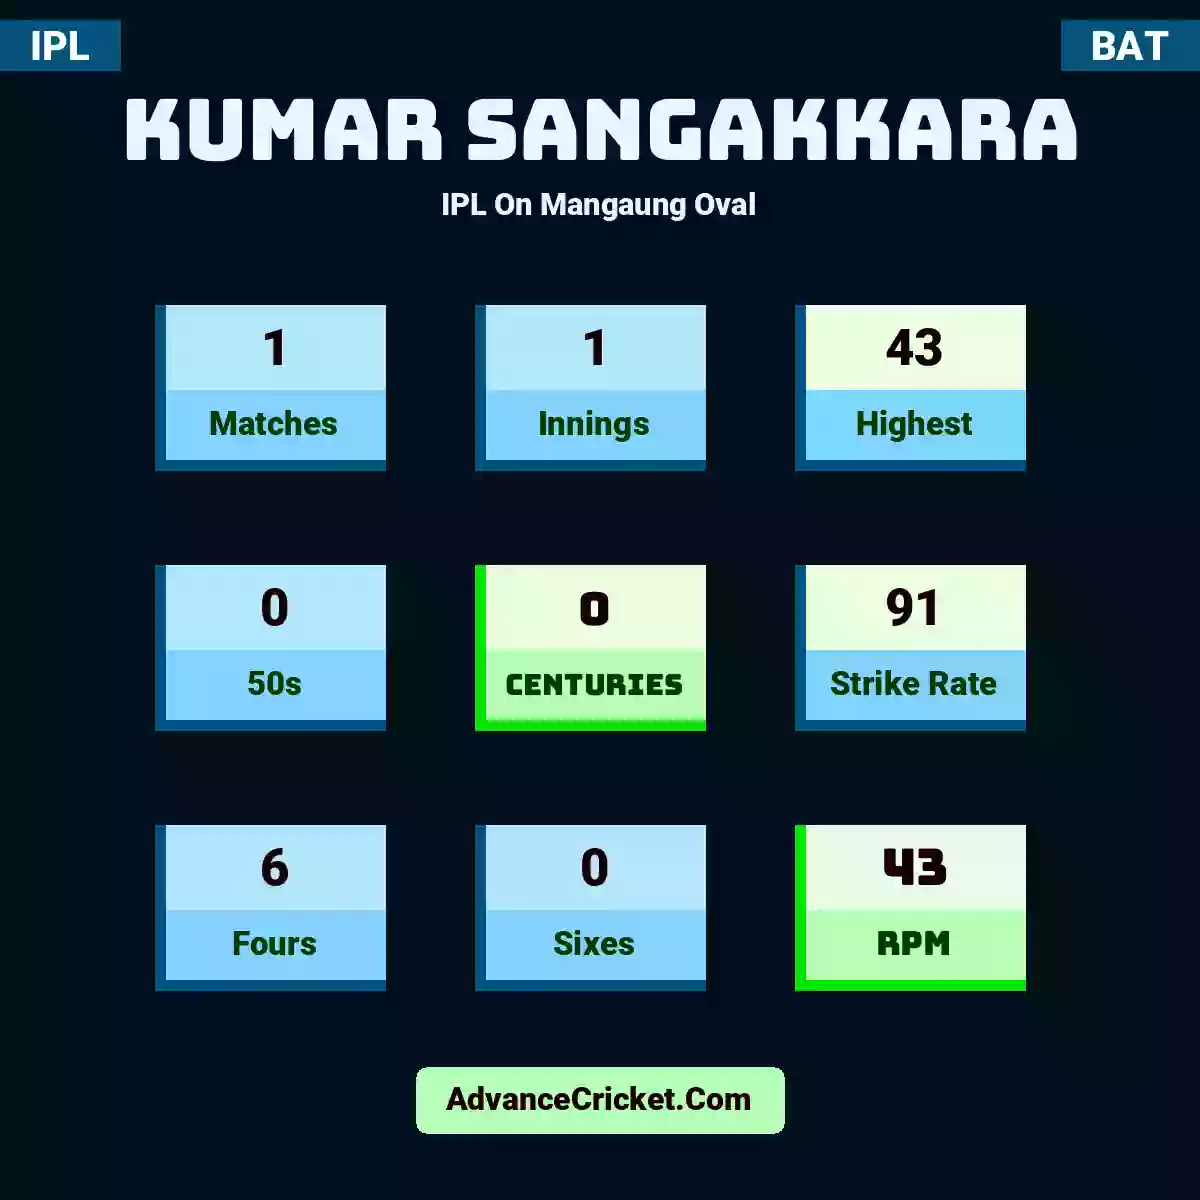 Kumar Sangakkara IPL  On Mangaung Oval, Kumar Sangakkara played 1 matches, scored 43 runs as highest, 0 half-centuries, and 0 centuries, with a strike rate of 91. K.Sangakkara hit 6 fours and 0 sixes, with an RPM of 43.